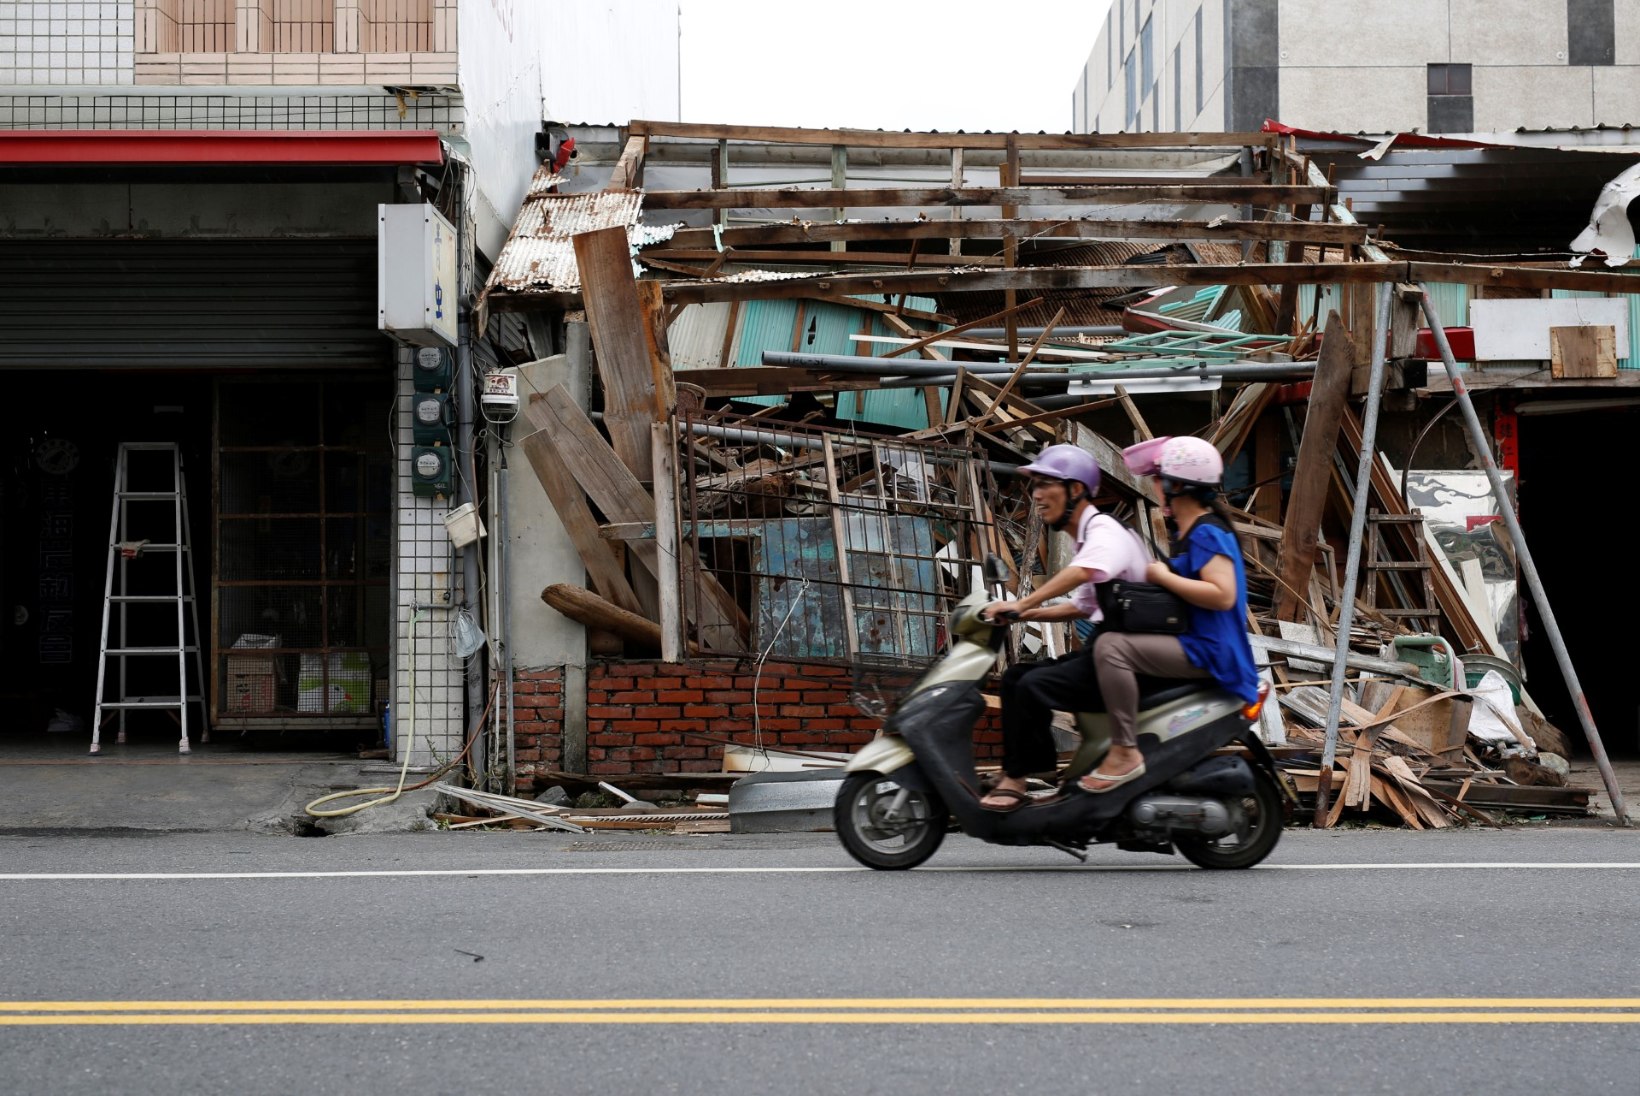 FOTOD MAALT JA KOSMOSEST | Nädalavahetusel möllas Taiwanil ja Hiinas viimase poolsajandi üks suurimaid tormihooaja alguse taifuune